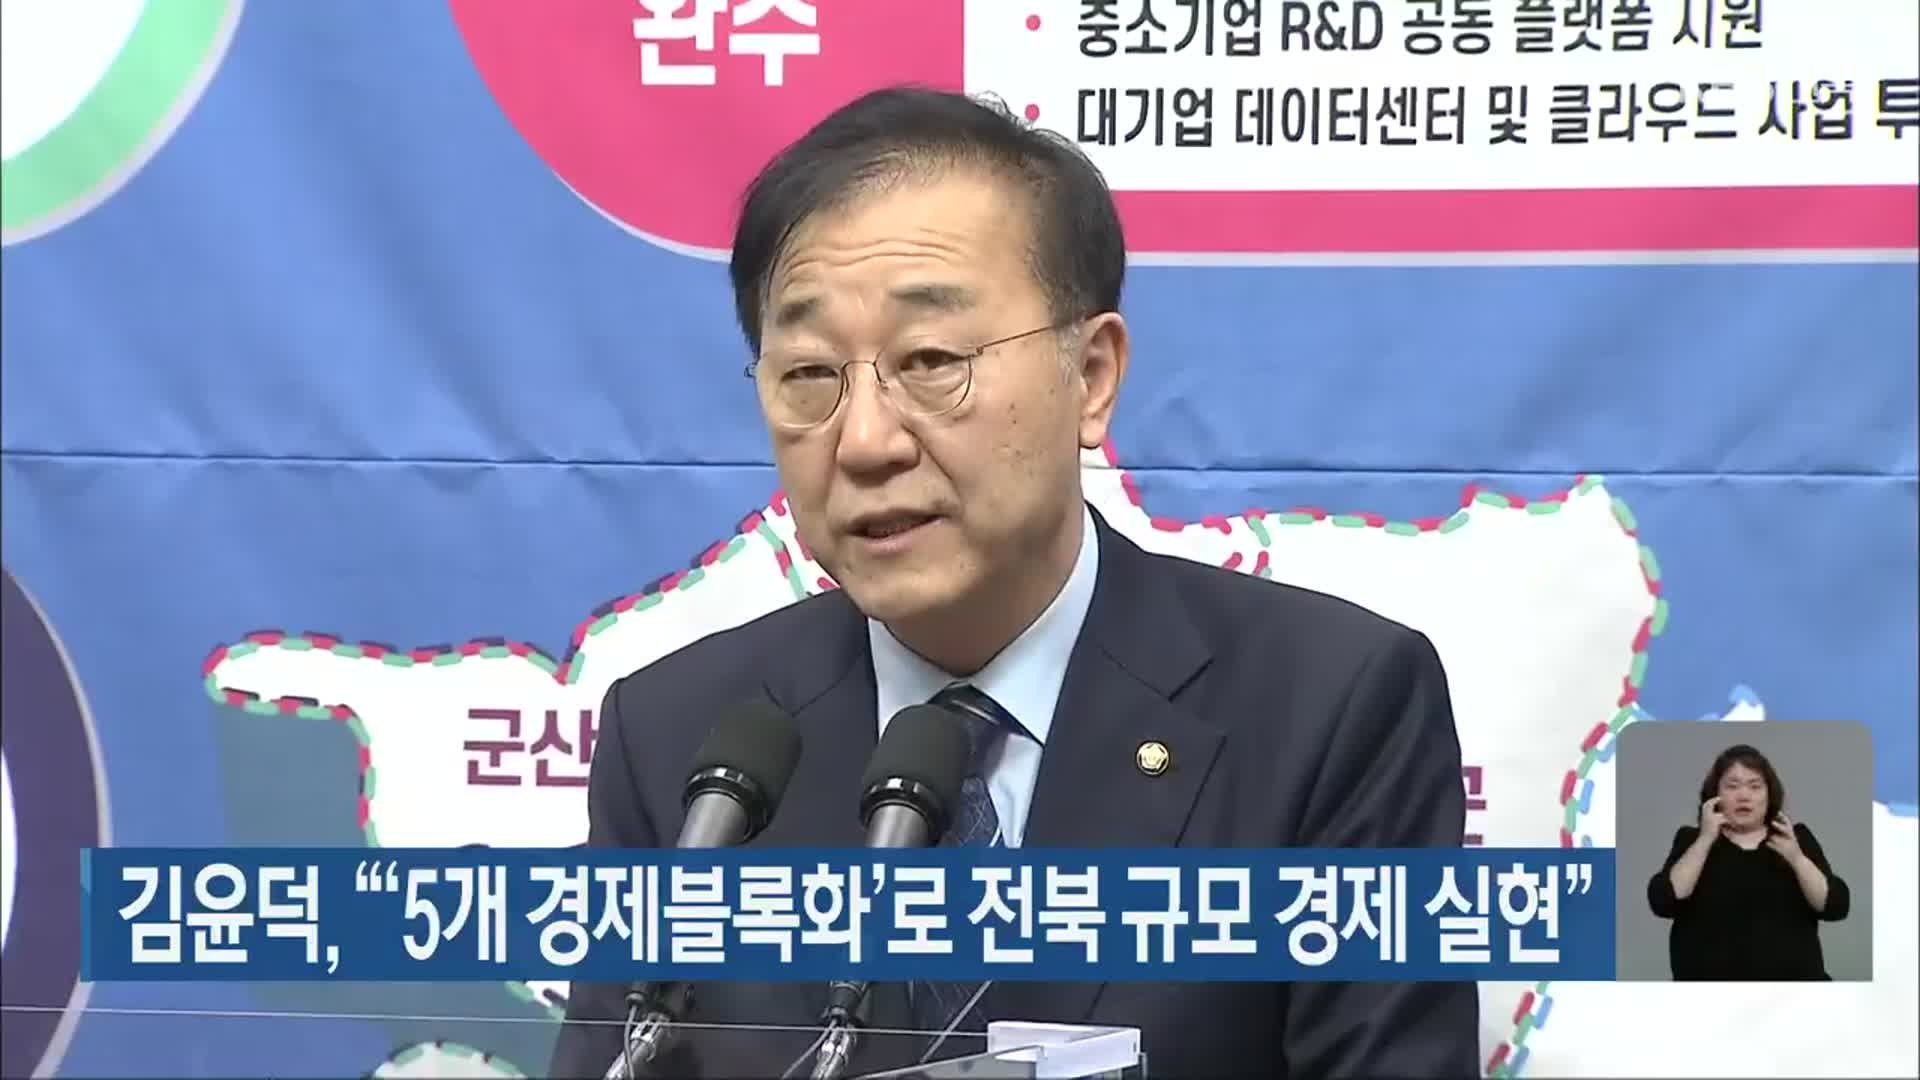 김윤덕, “‘5개 경제블록화’로 전북 규모 경제 실현”